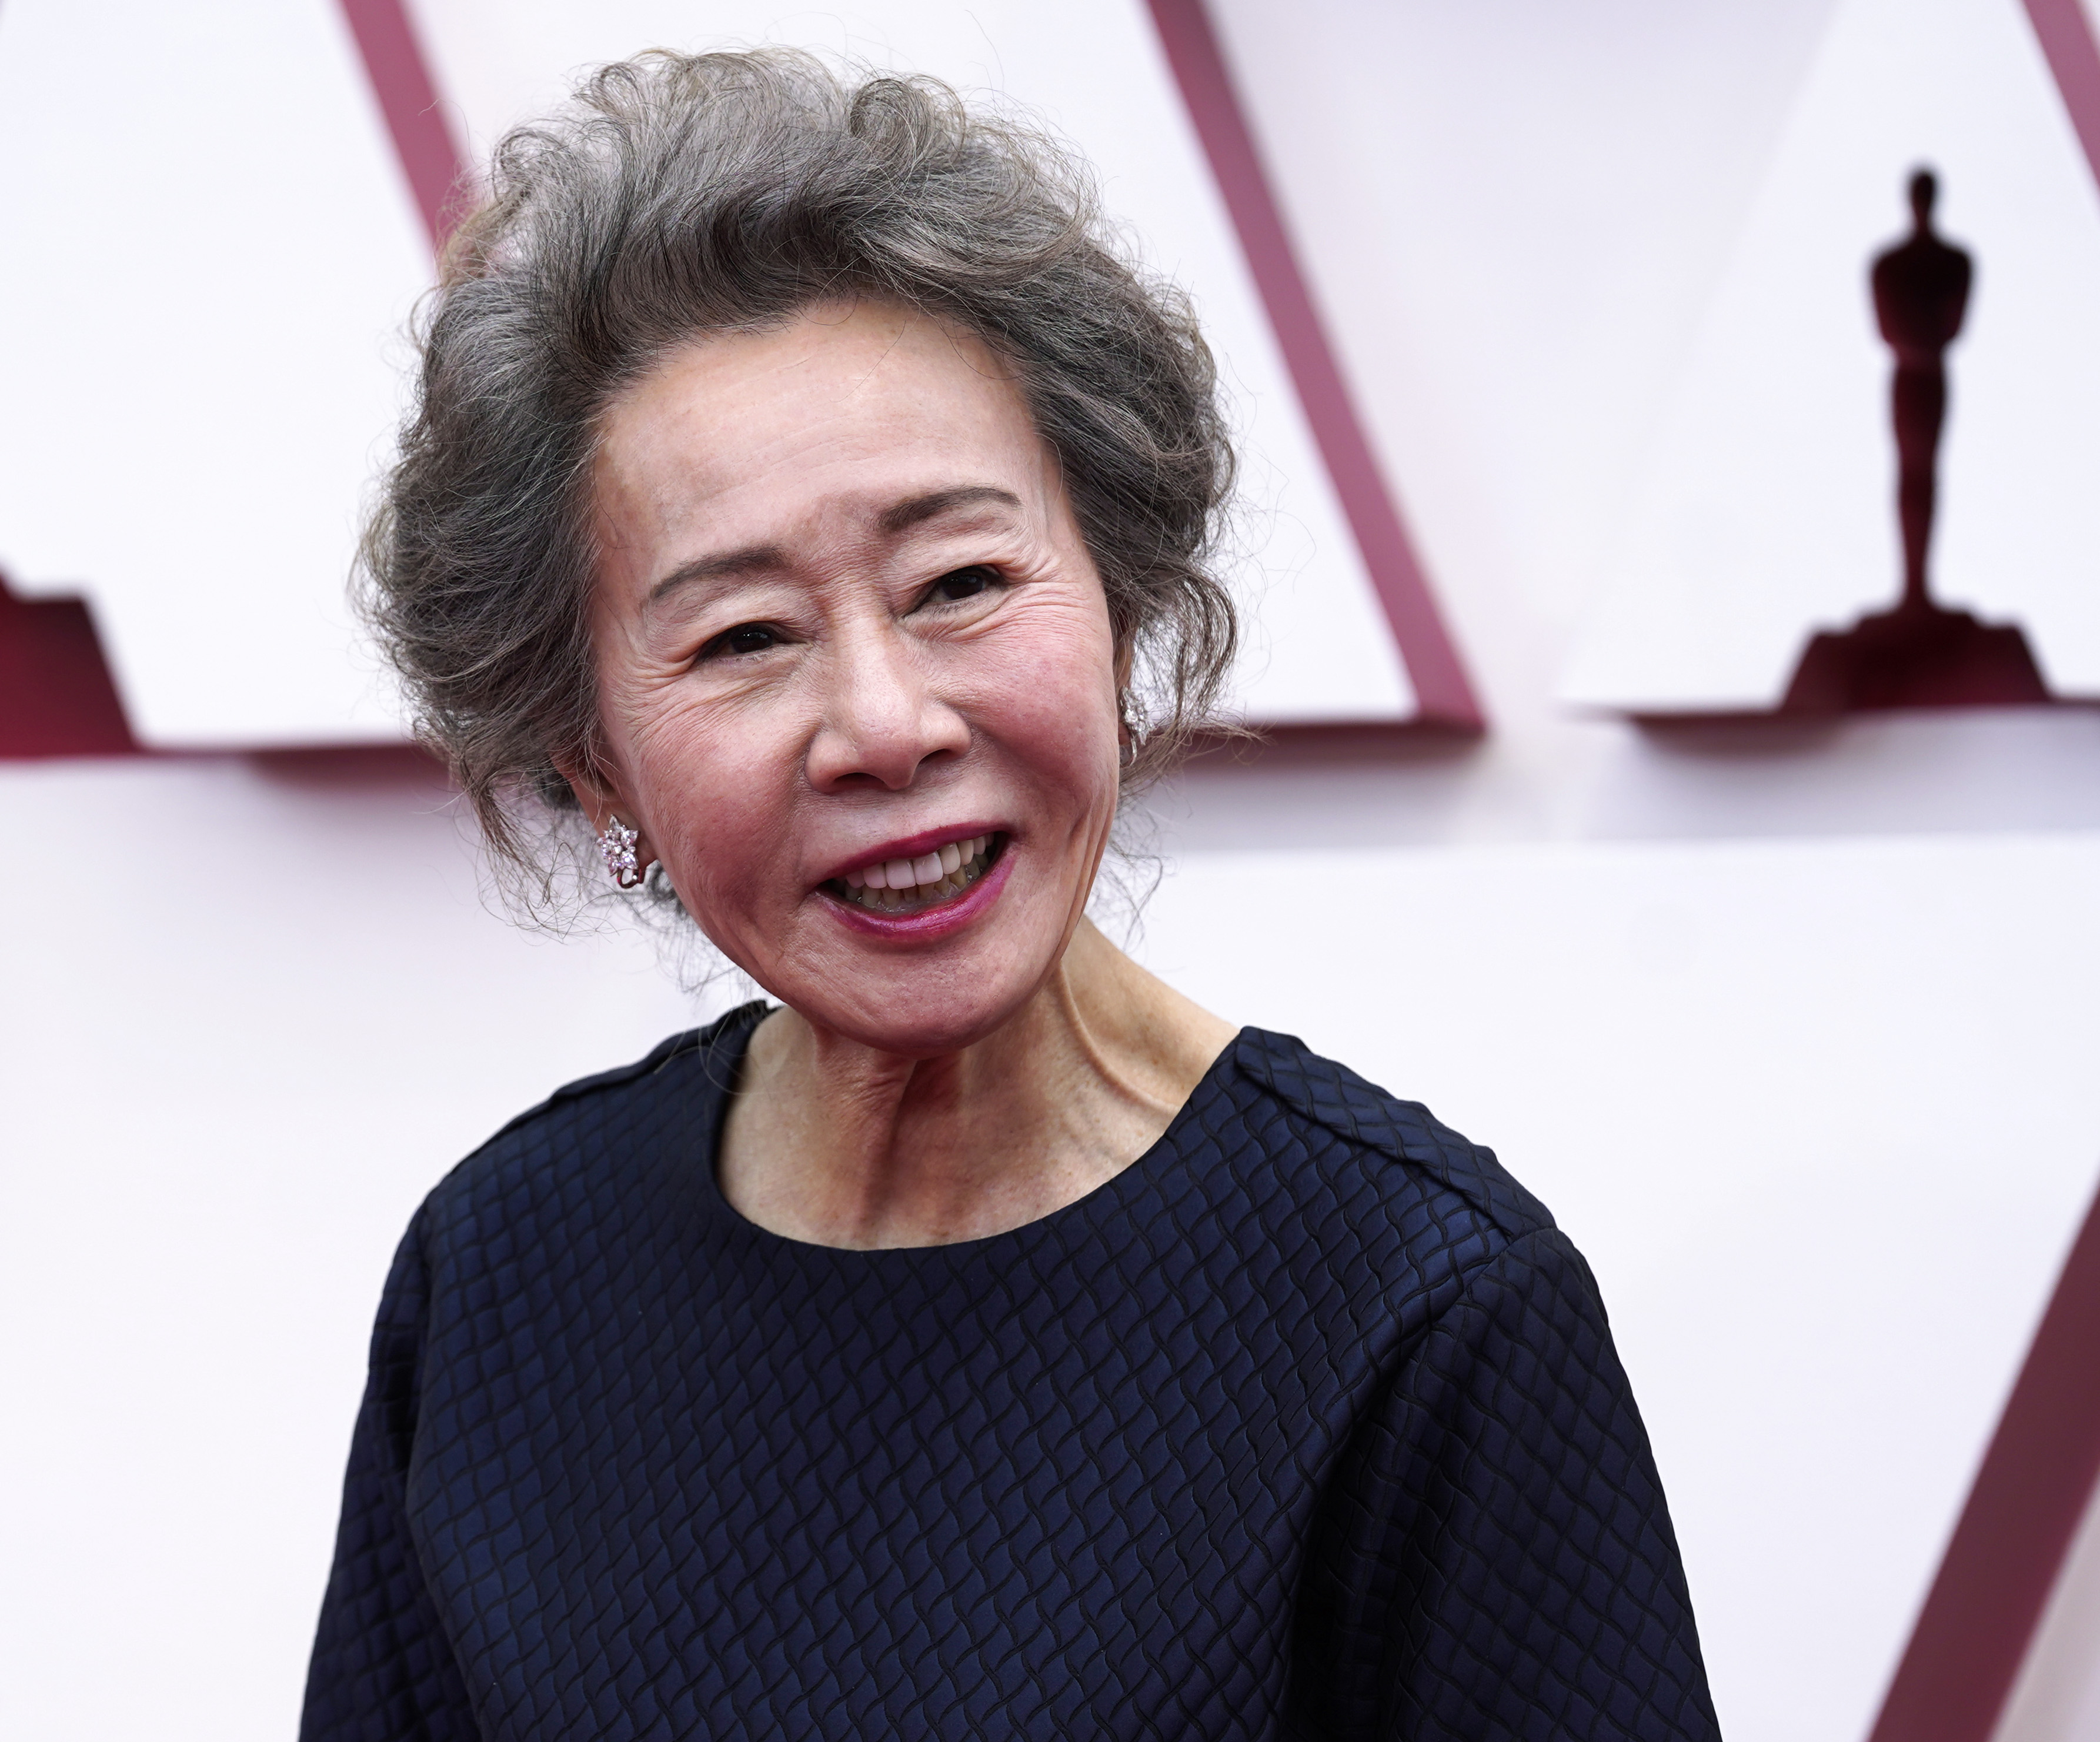 2021 Oscars winners: 'Nomadland,' Chloe Zhao, and Anthony Hopkins